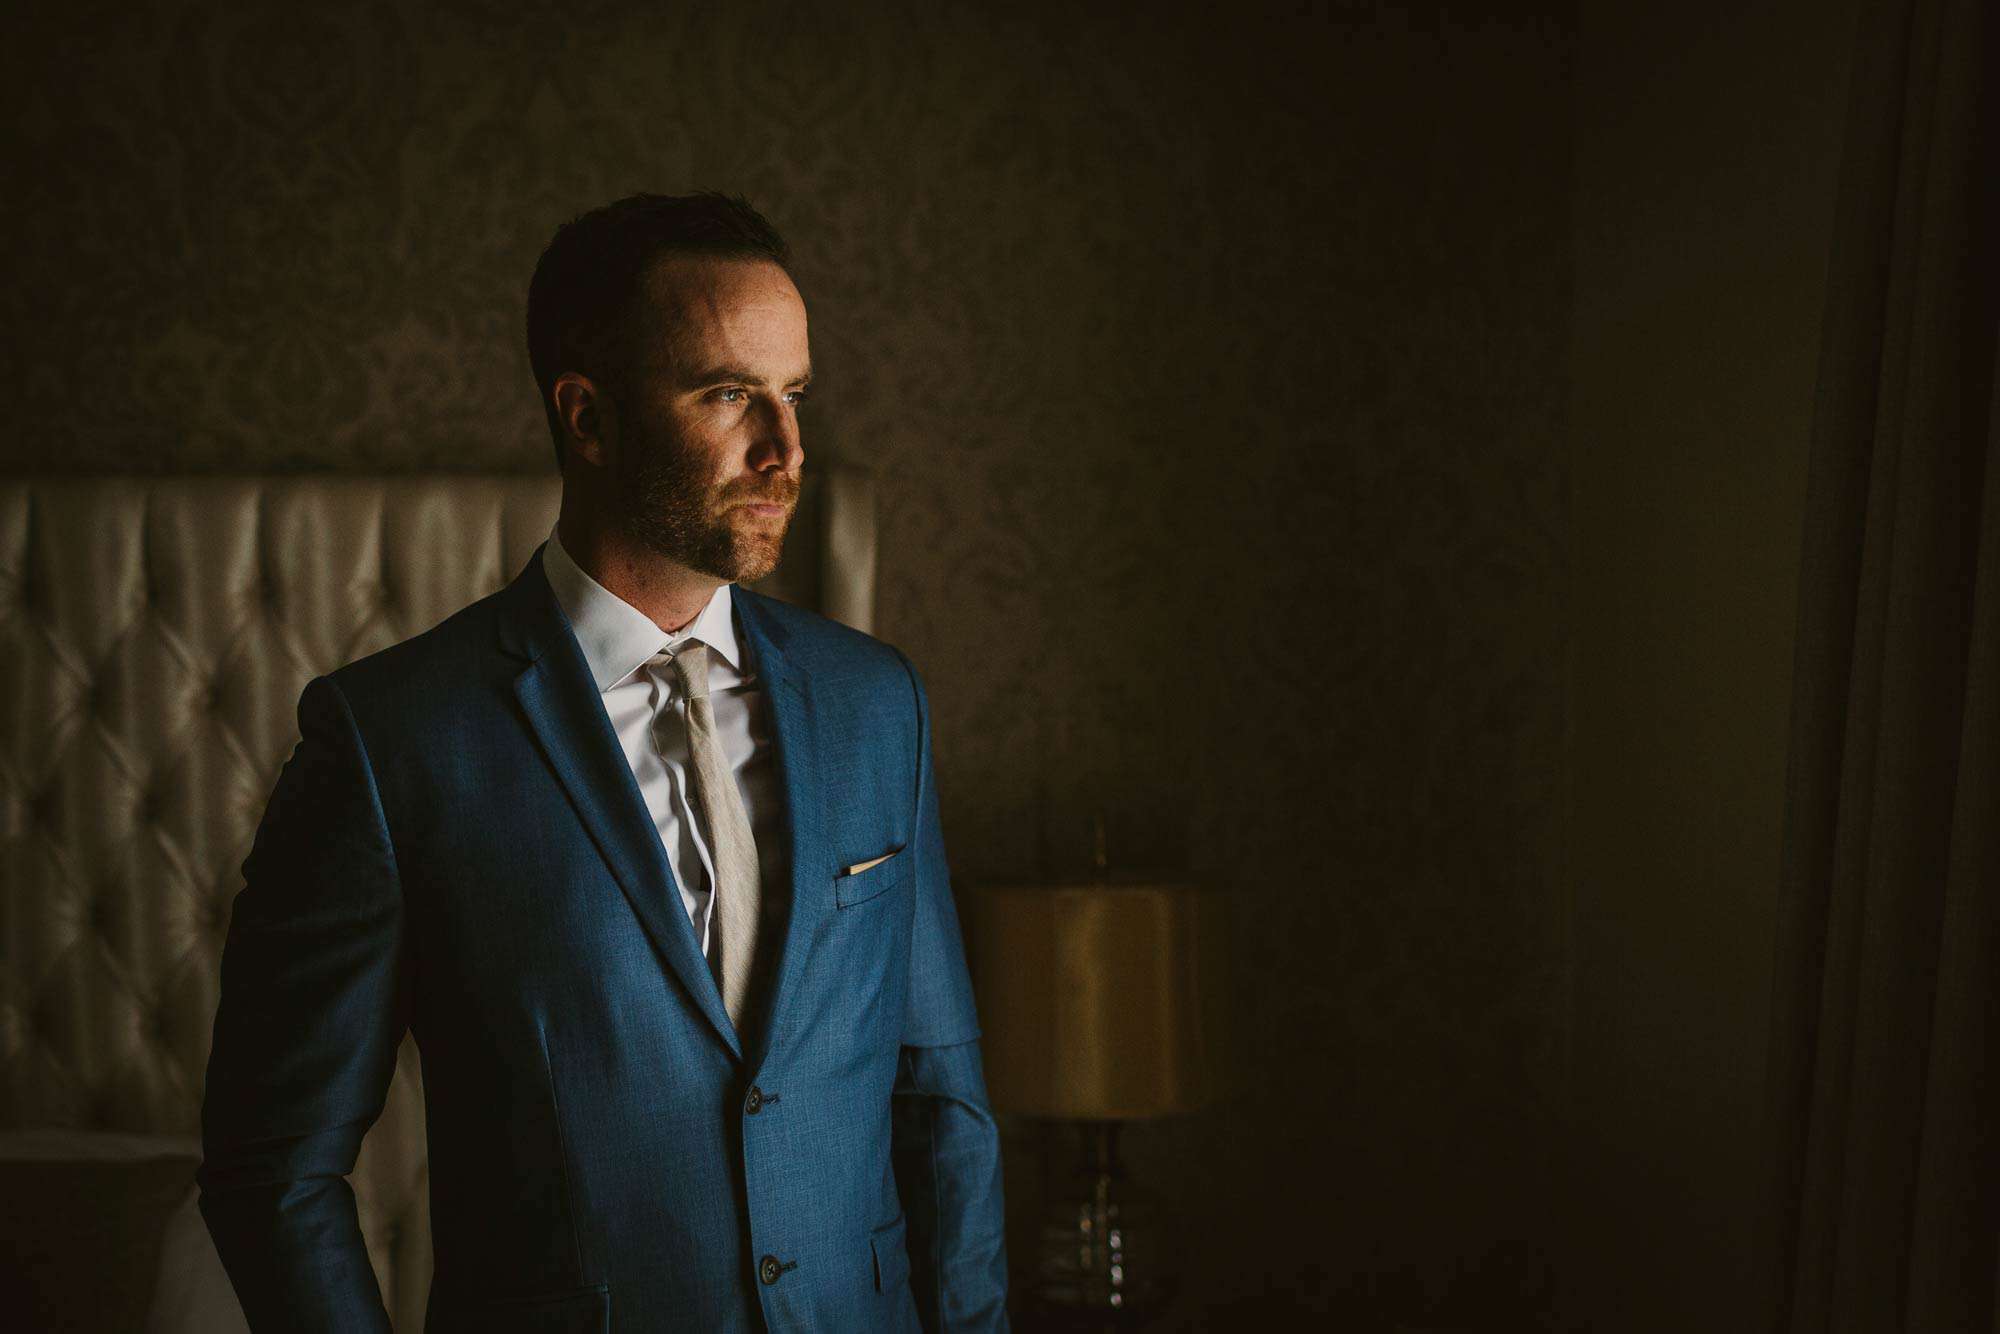 Elopement videographer Ireland, groom portrait